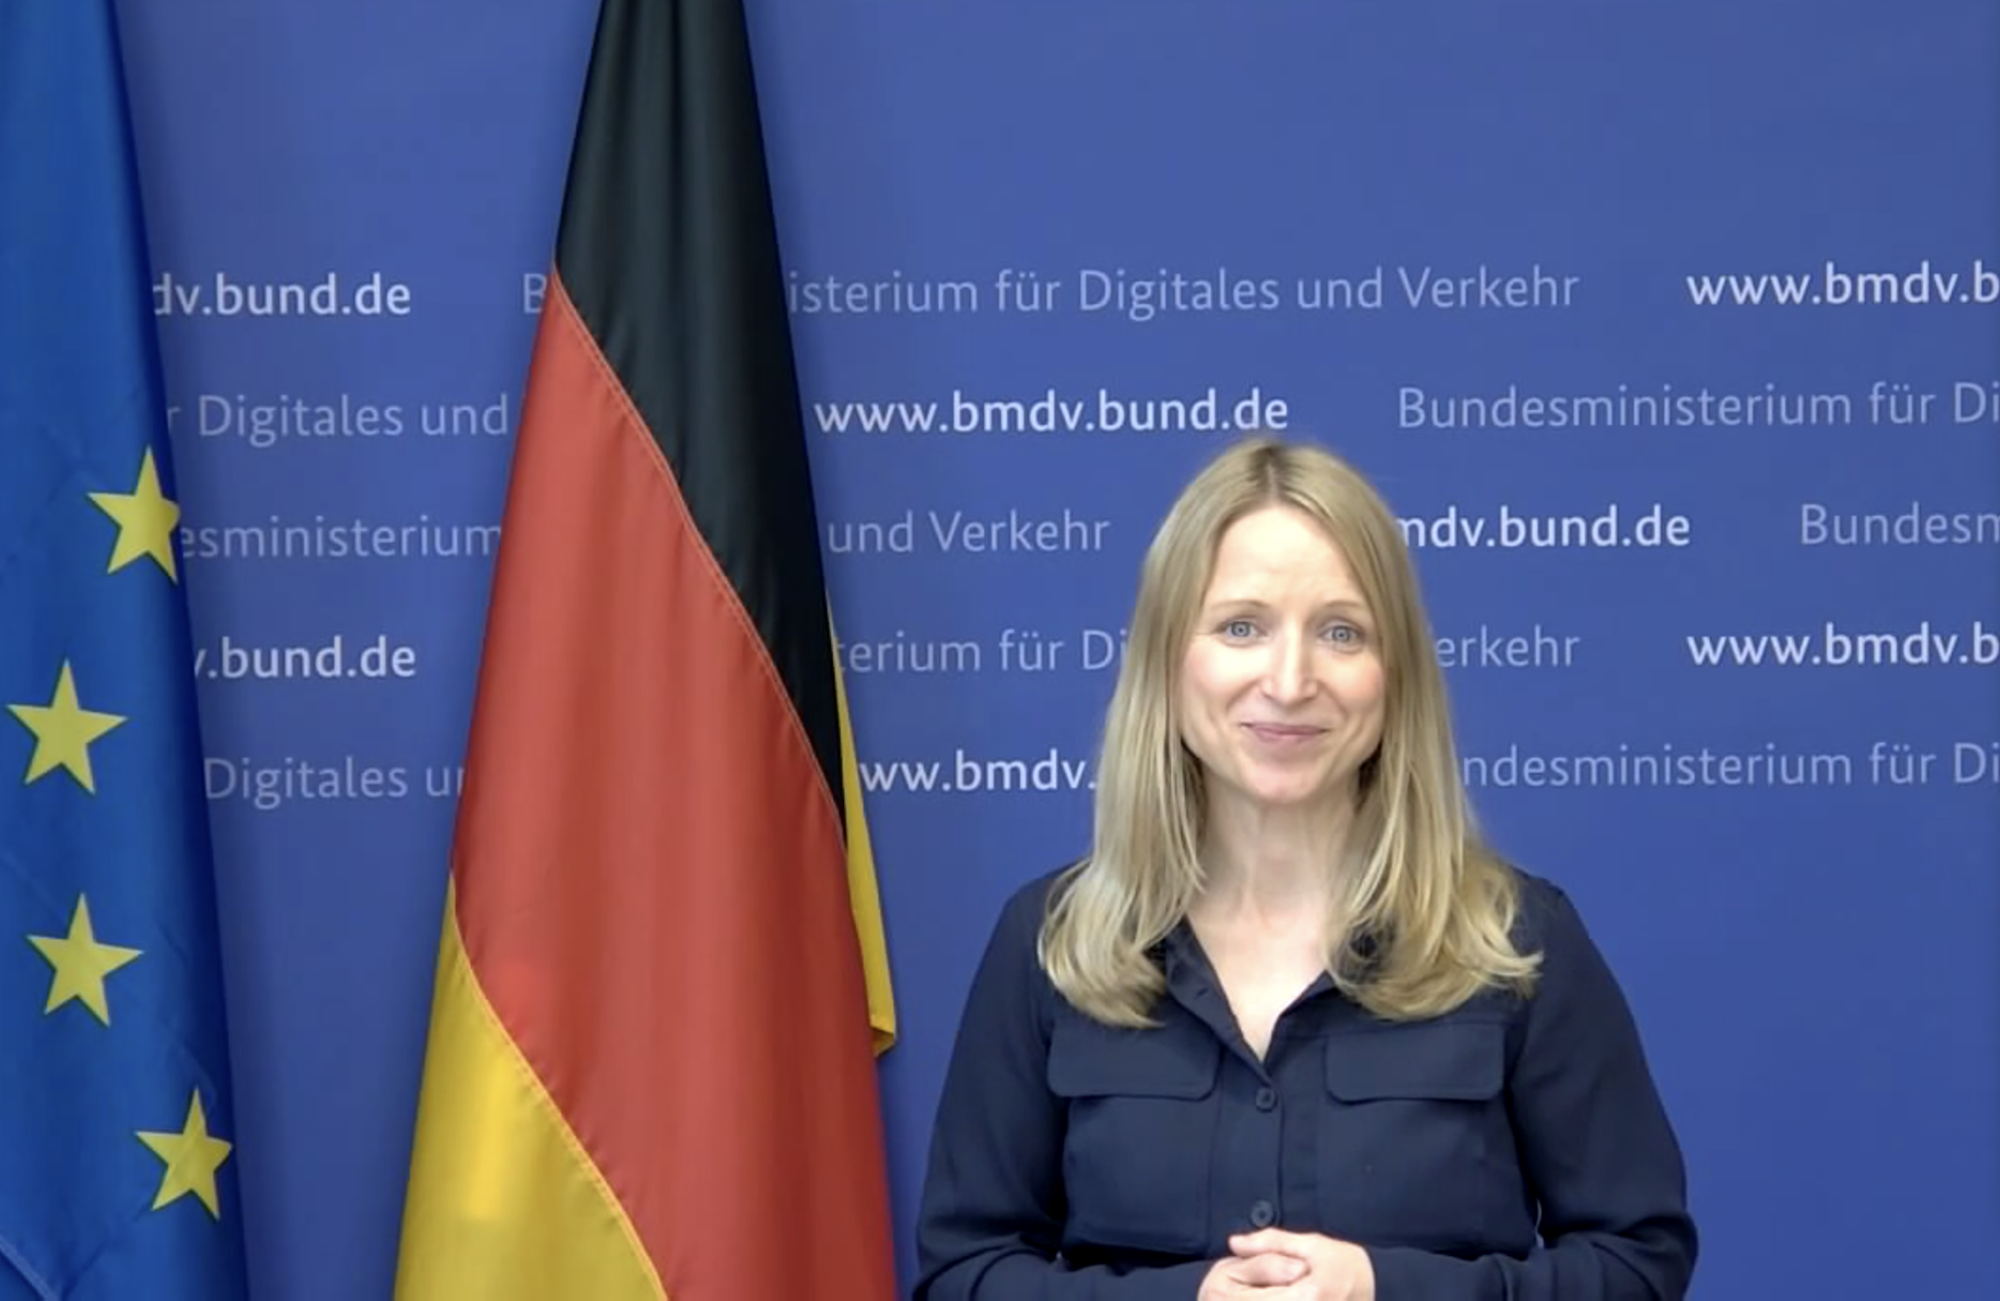 Foto, das Daniela Kluckert zeigt, links neben ihr eine Deutschland-Fahne und eine EU-Fahne, hier ihr eine blaue Wand, auf der die Internetadresse des BMDV mehrfach zu lesen ist.